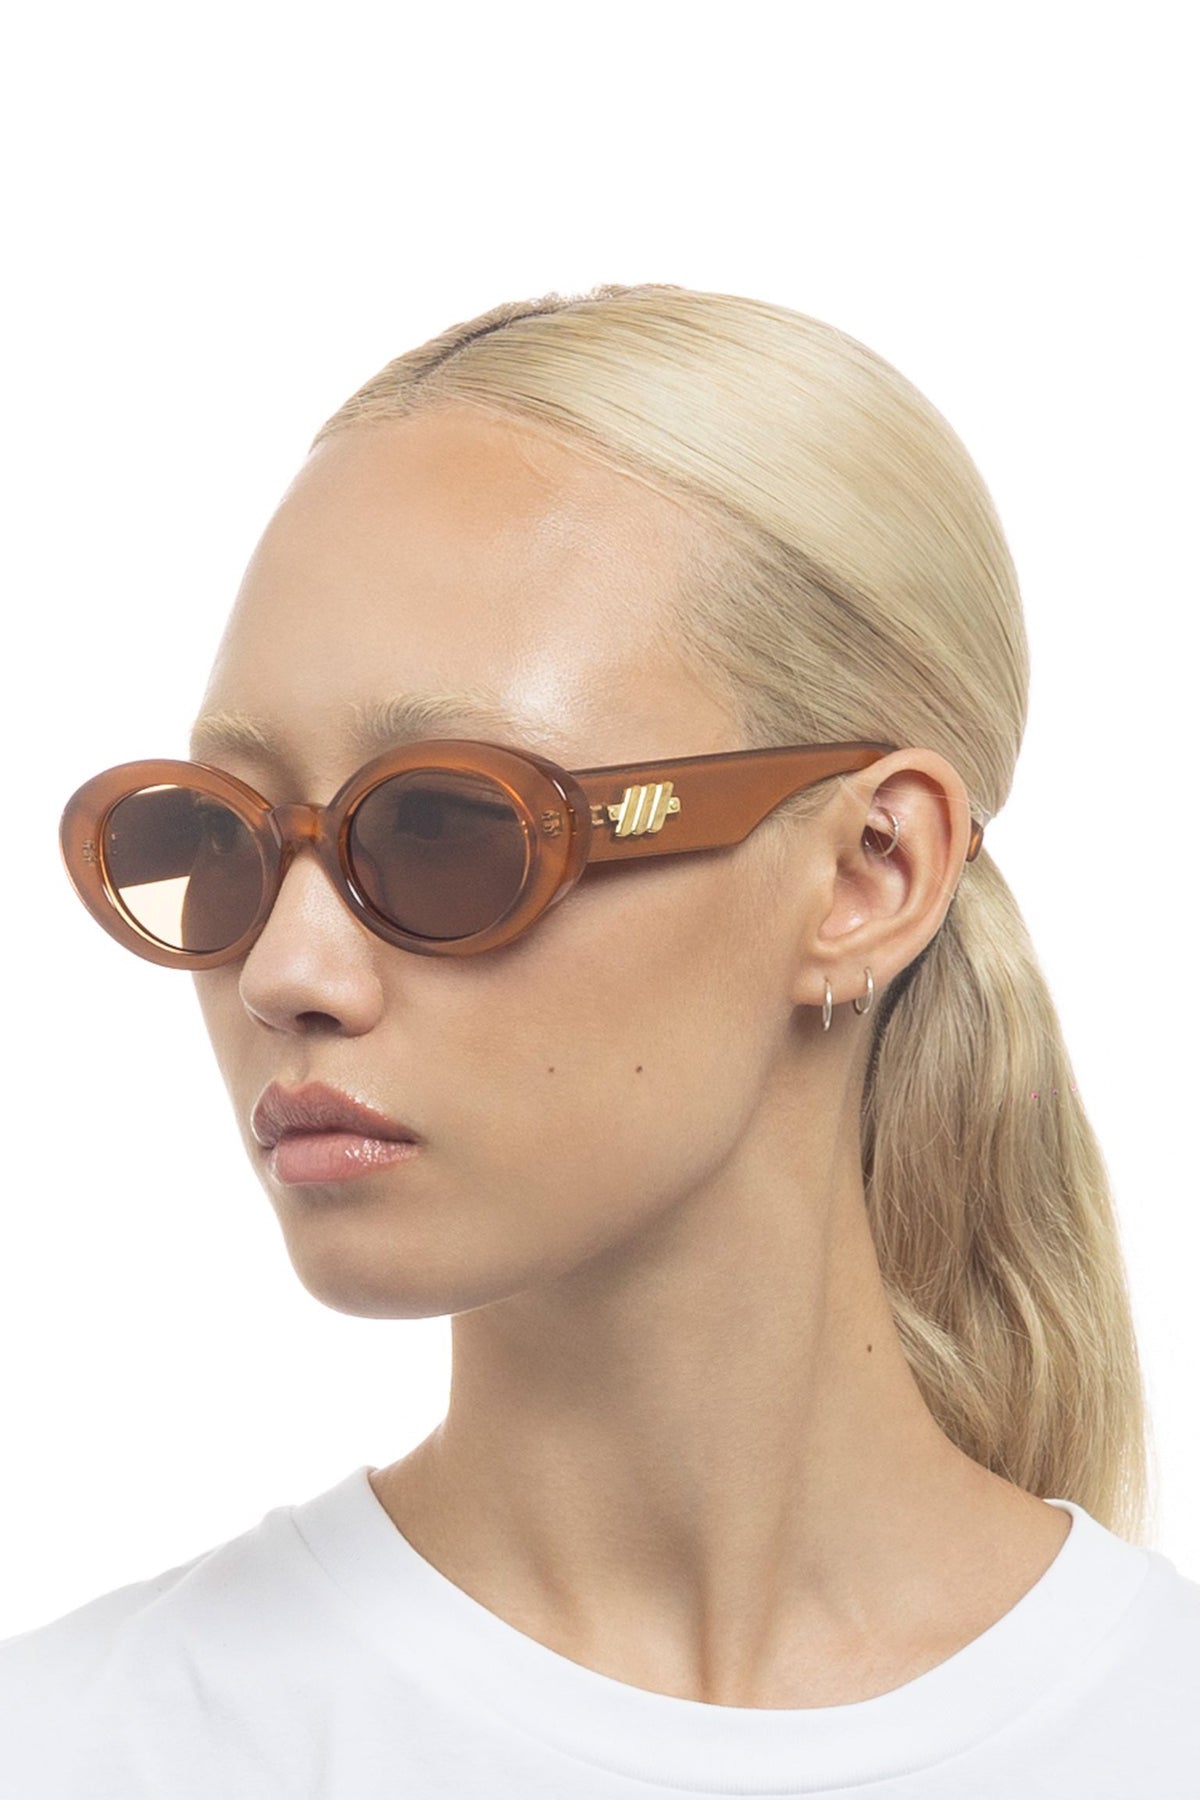 Le Specs Nouveau Vie Sunglasses - Caramel - RUM Amsterdam